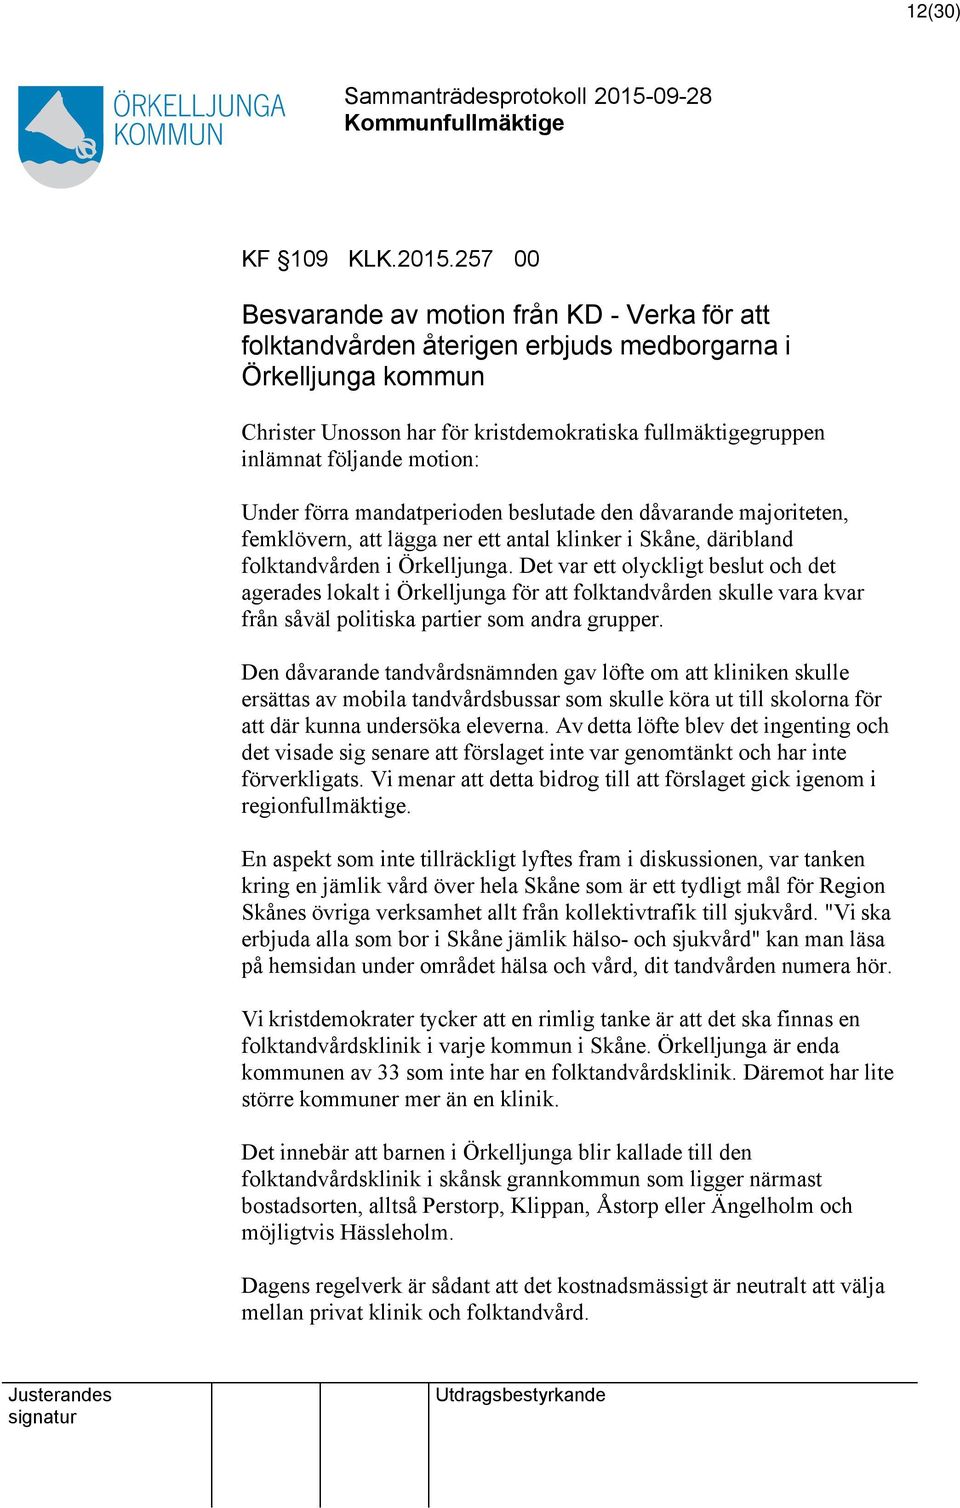 motion: Under förra mandatperioden beslutade den dåvarande majoriteten, femklövern, att lägga ner ett antal klinker i Skåne, däribland folktandvården i Örkelljunga.